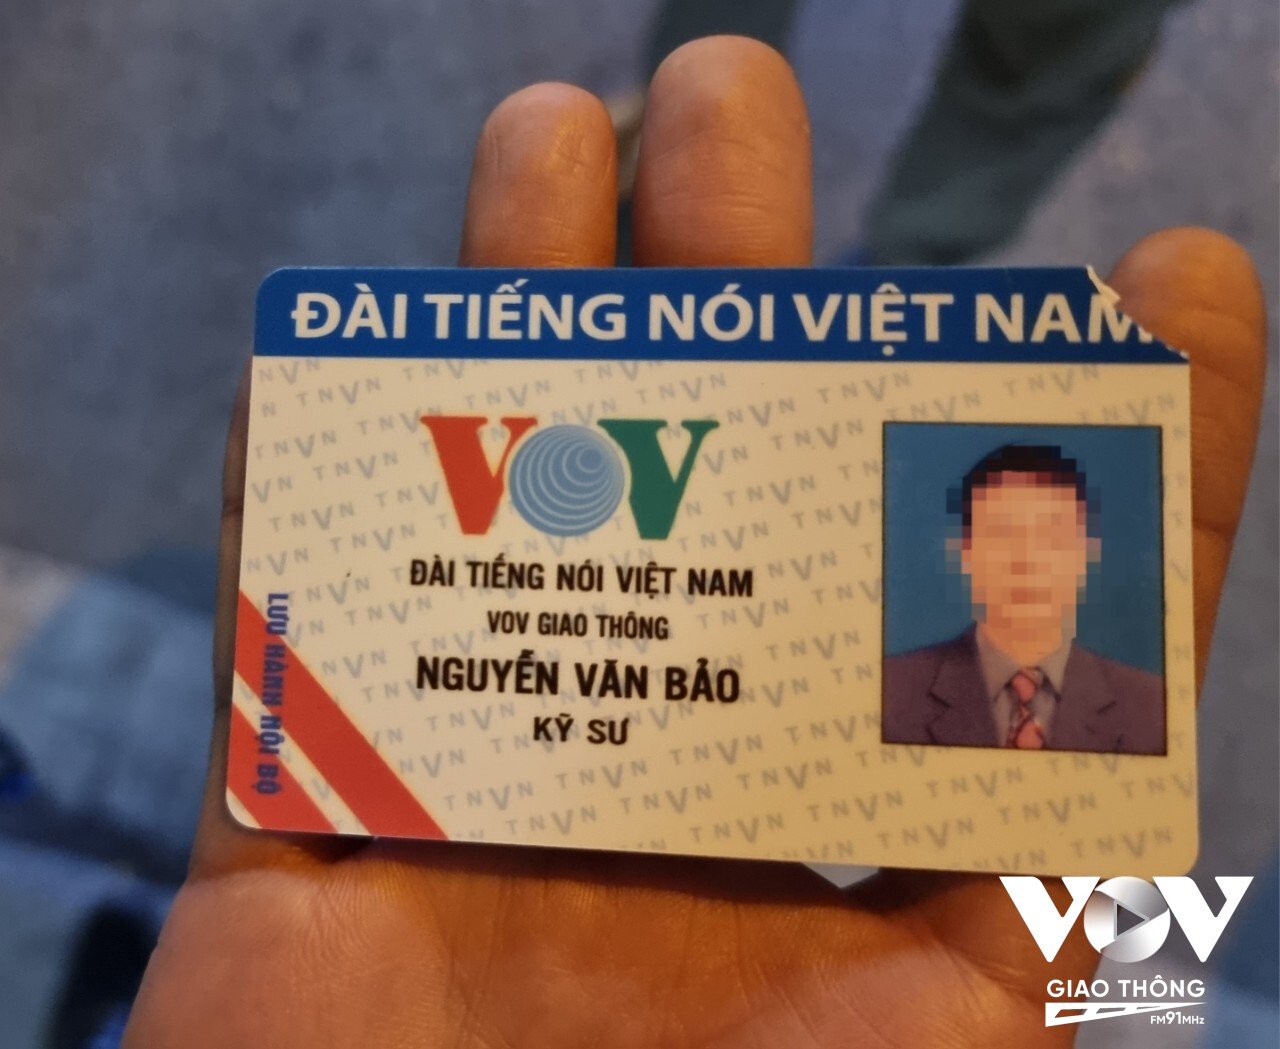 Tấm thẻ giả mạo Kênh VOV Giao thông - Đài Tiếng nói Việt Nam được ông N.V.B xuất trình.